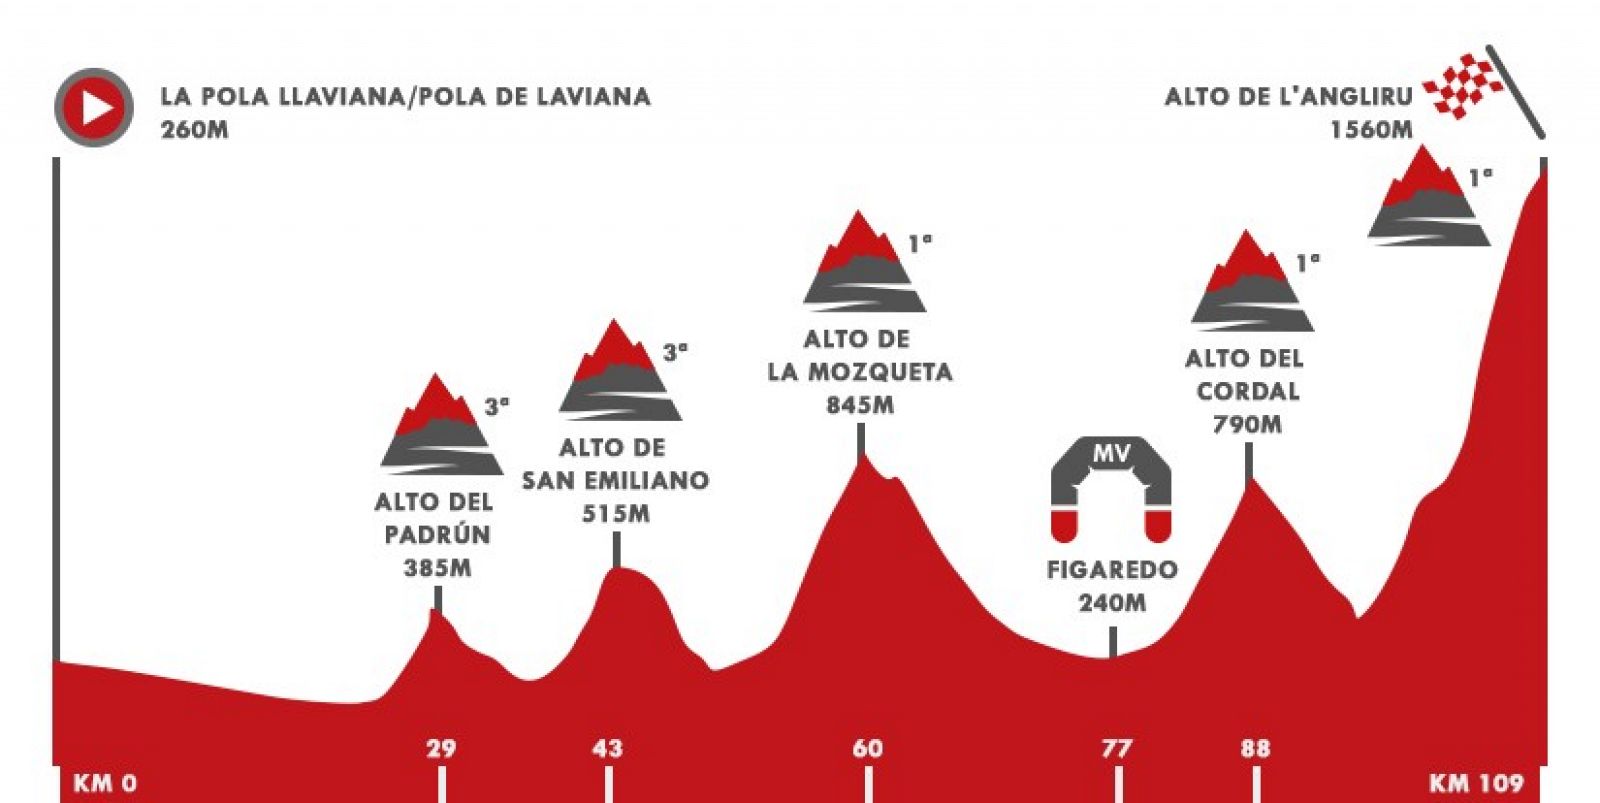 Vuelta 2020 Etapa 12 | Perfil de la etapa 12: Pola de Laviana - Alto de L'Angliru